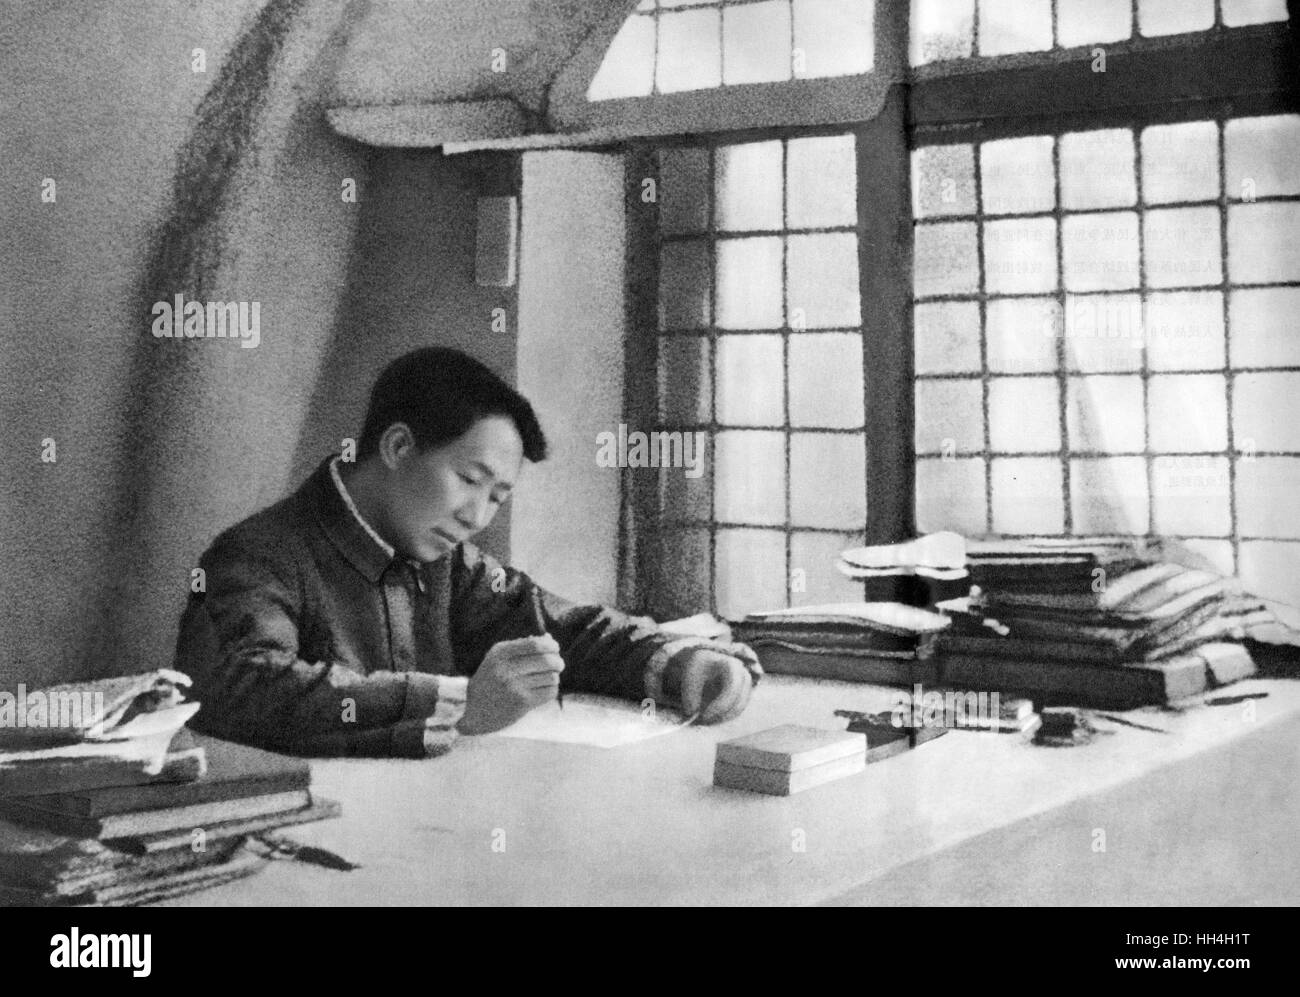 Mao Zedong (Mao Tse-tung) (1893-1976) - chinesische kommunistische revolutionäre und Gründungsvater der Volksrepublik China. Sehen Sie hier schreiben, eine Buch für seine Truppen mit dem Titel langwierige Kriegsführung. Stockfoto